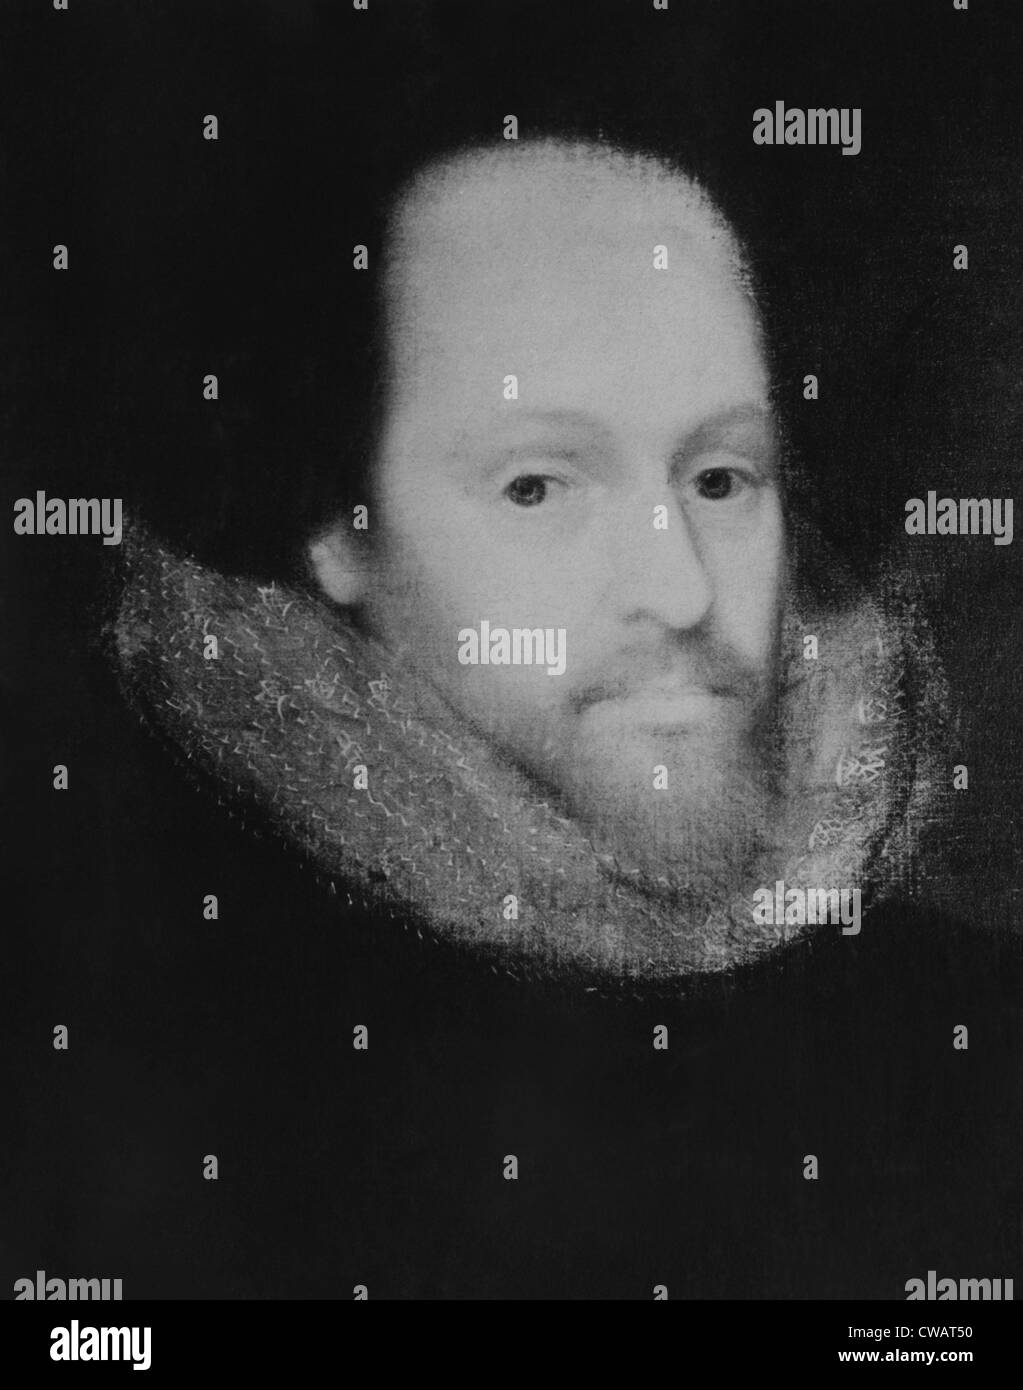 William Shakespeare (1564-1616), poeta inglese e drammaturgo. La cortesia: Archivi CSU/Everett Collection Foto Stock